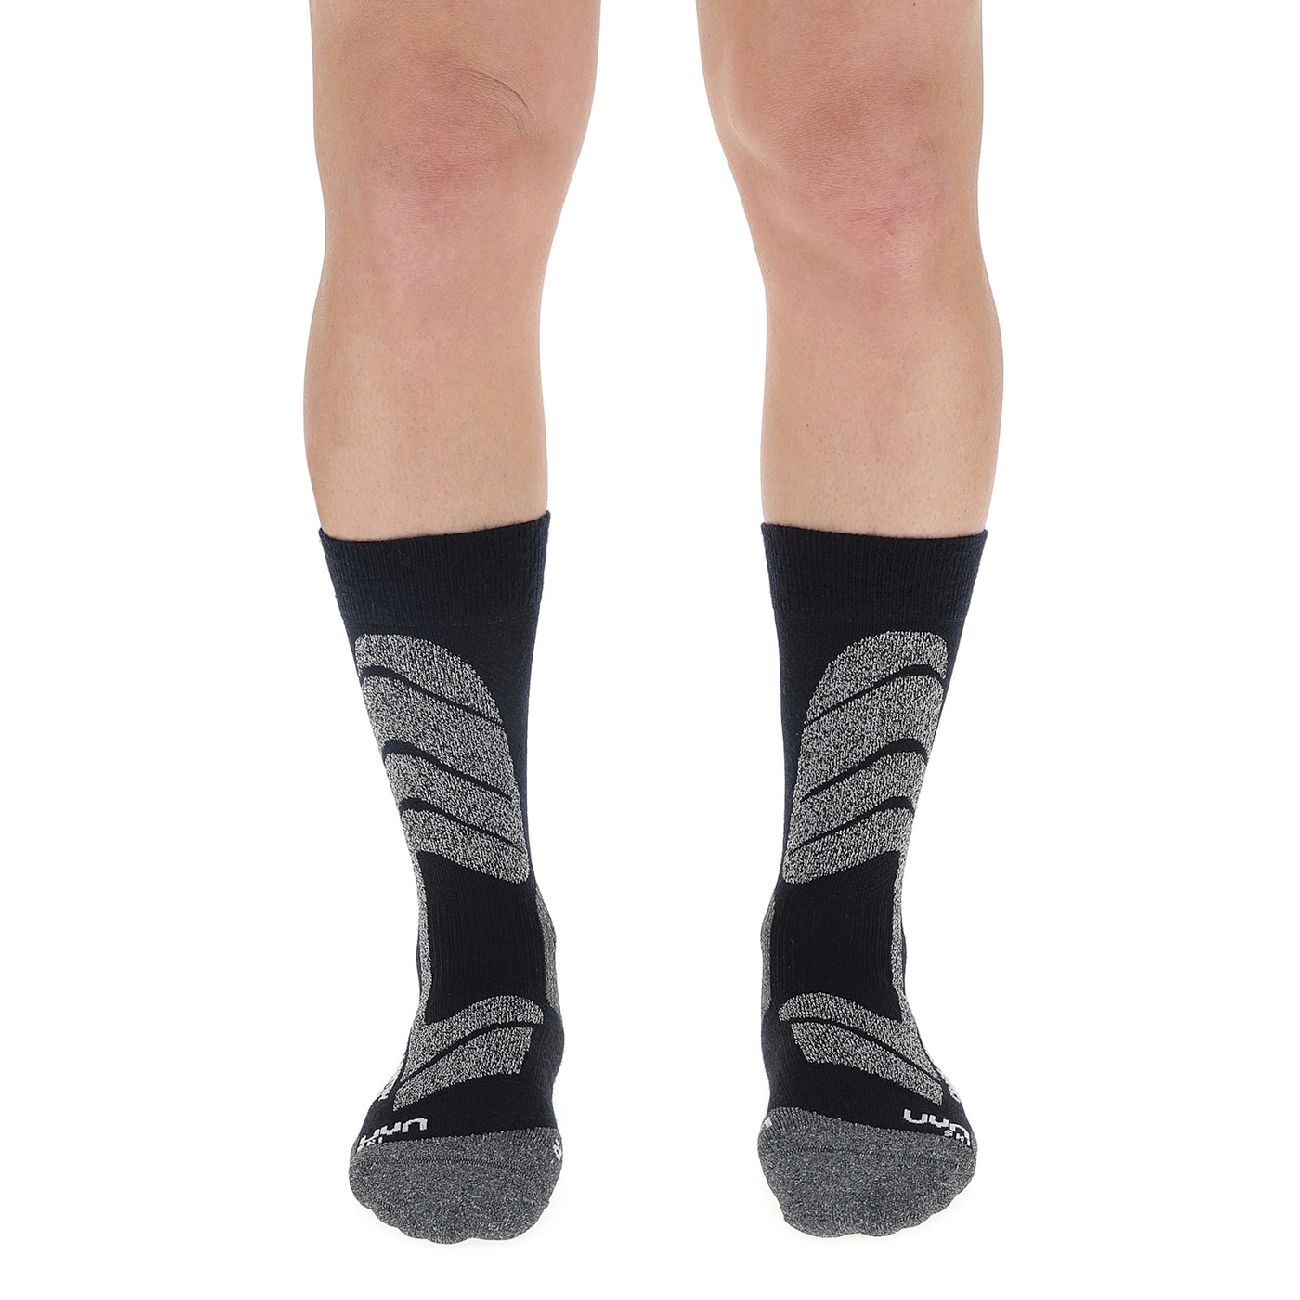 Uyn Ski Cross Country Socks - Skisokker - Herrer